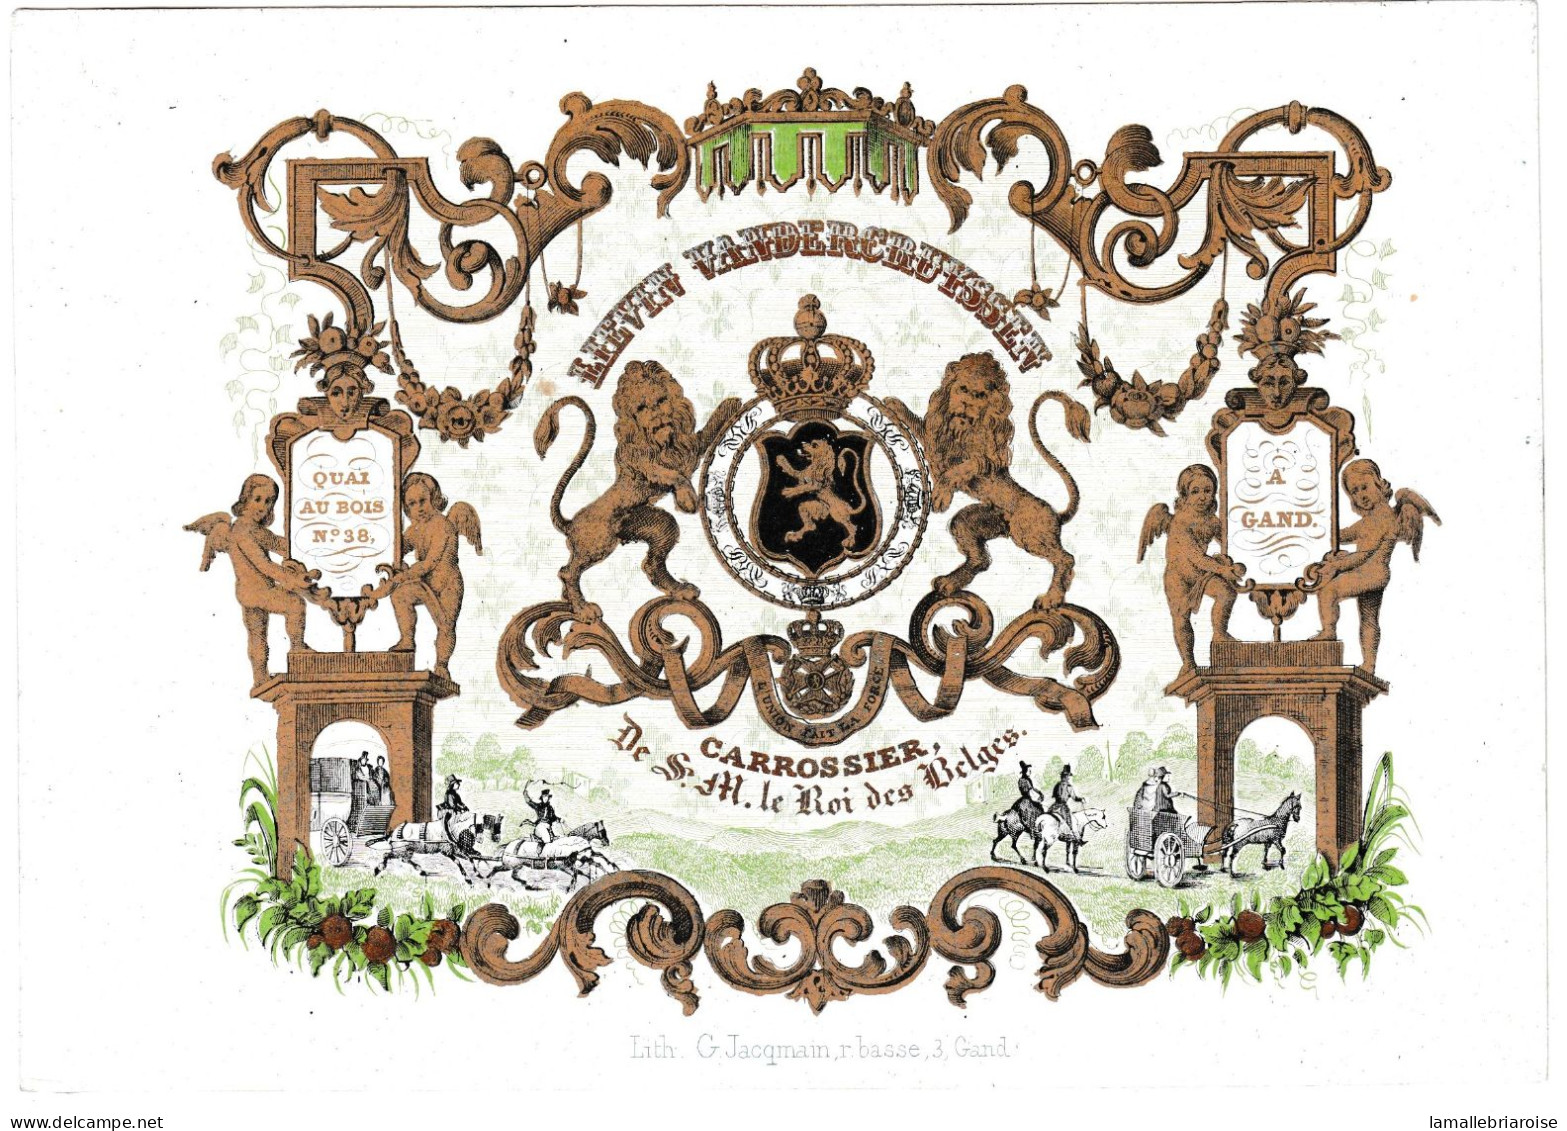 Belgique, Carte Porcelaine, Vandercruyssen, Carrossier De S. M. Le Roi Des Belges à Gand, Dim:192x126mm, - Cartoline Porcellana